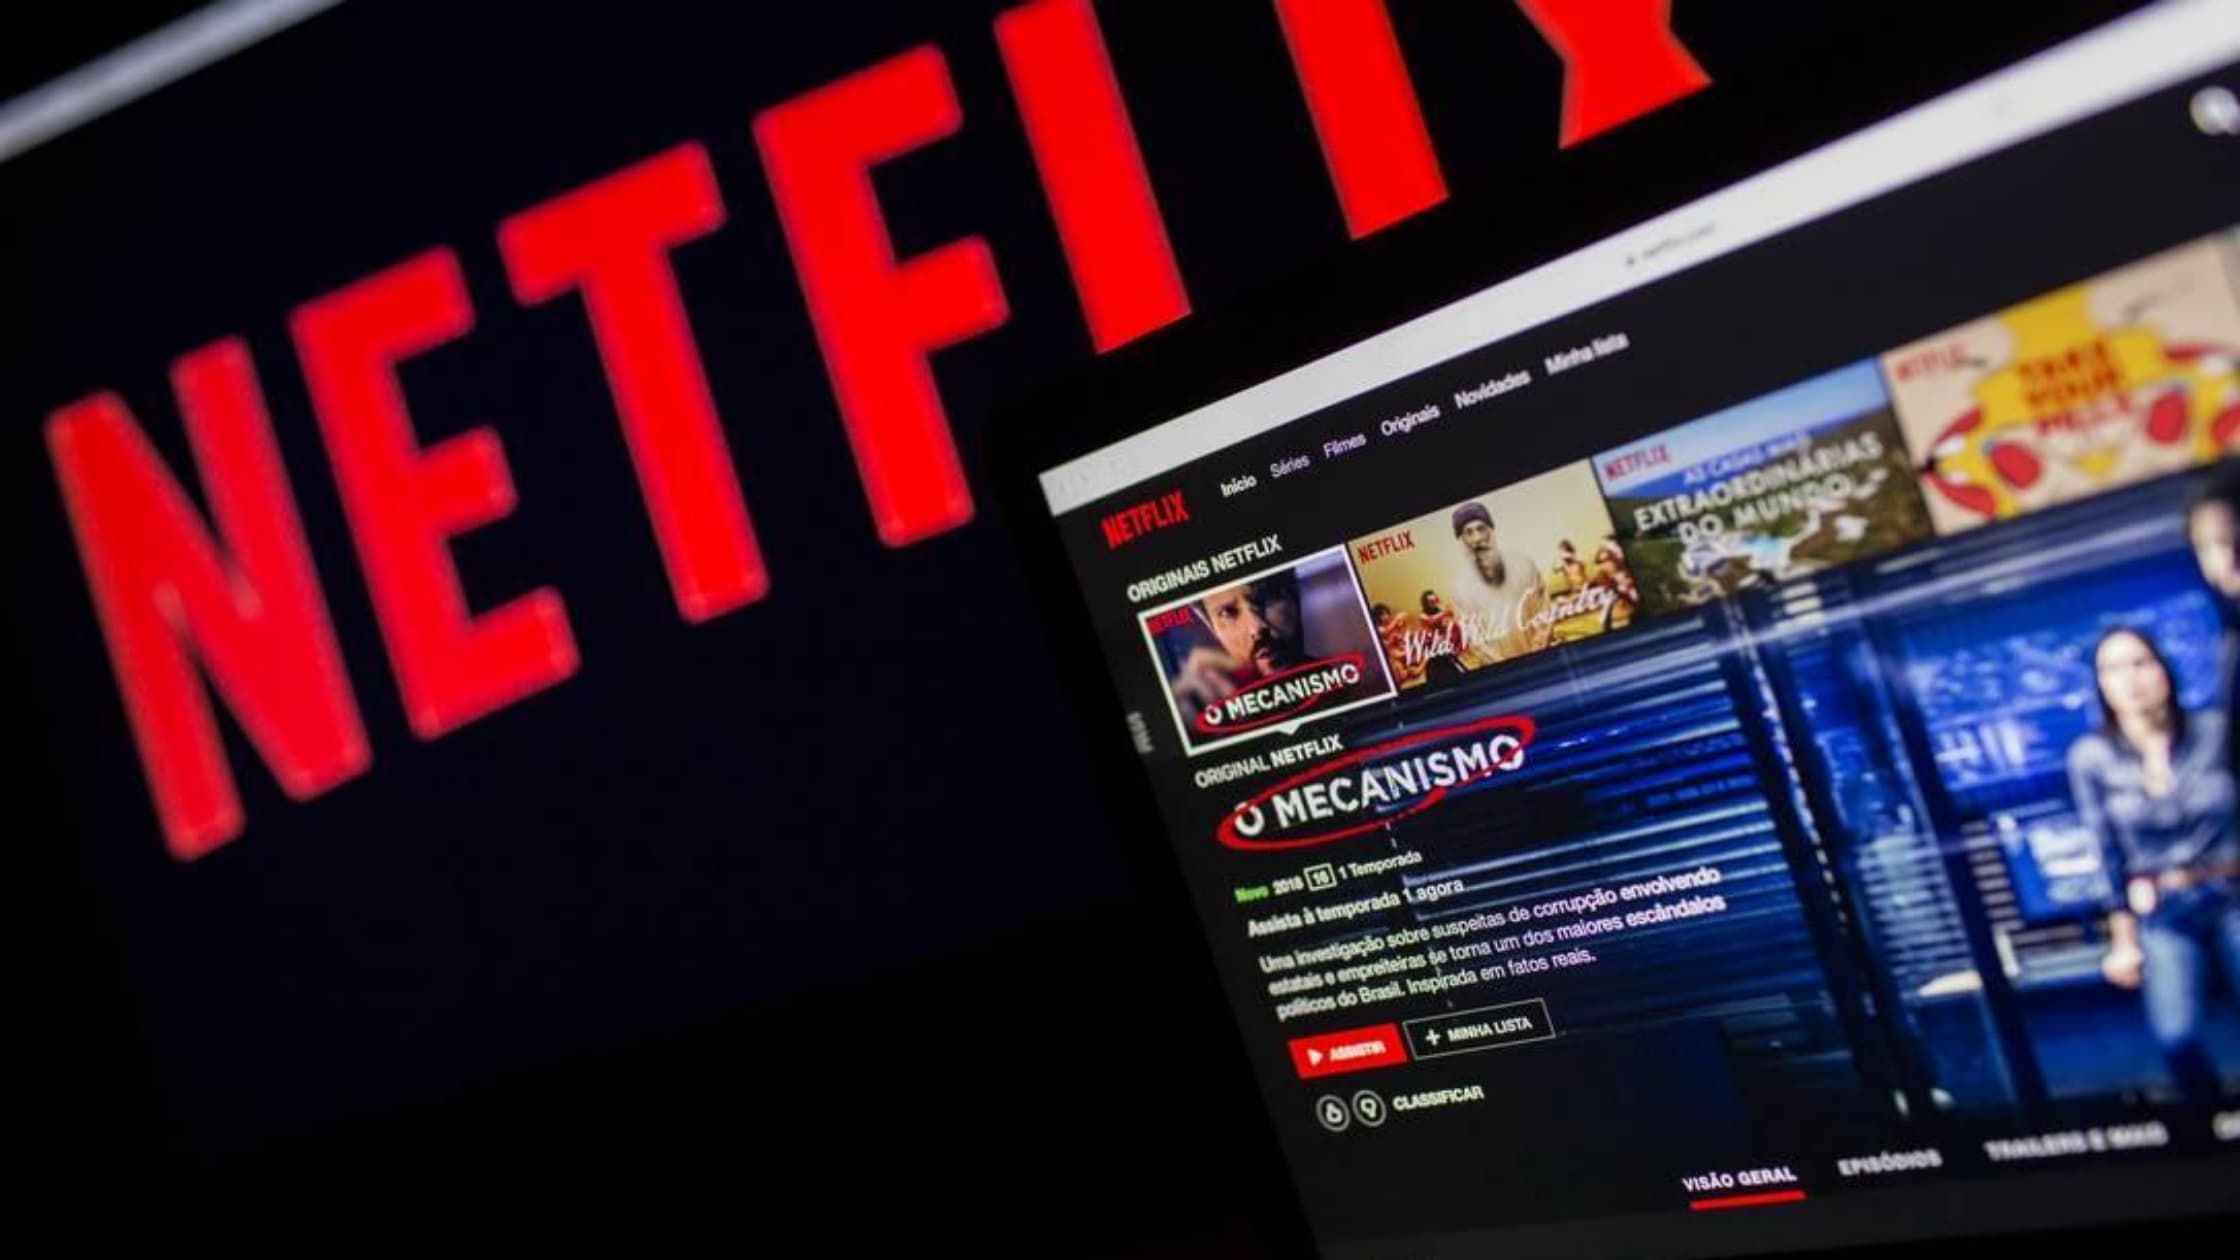 Netflix Brasil é uma das contas de marca com mais interações no mundo